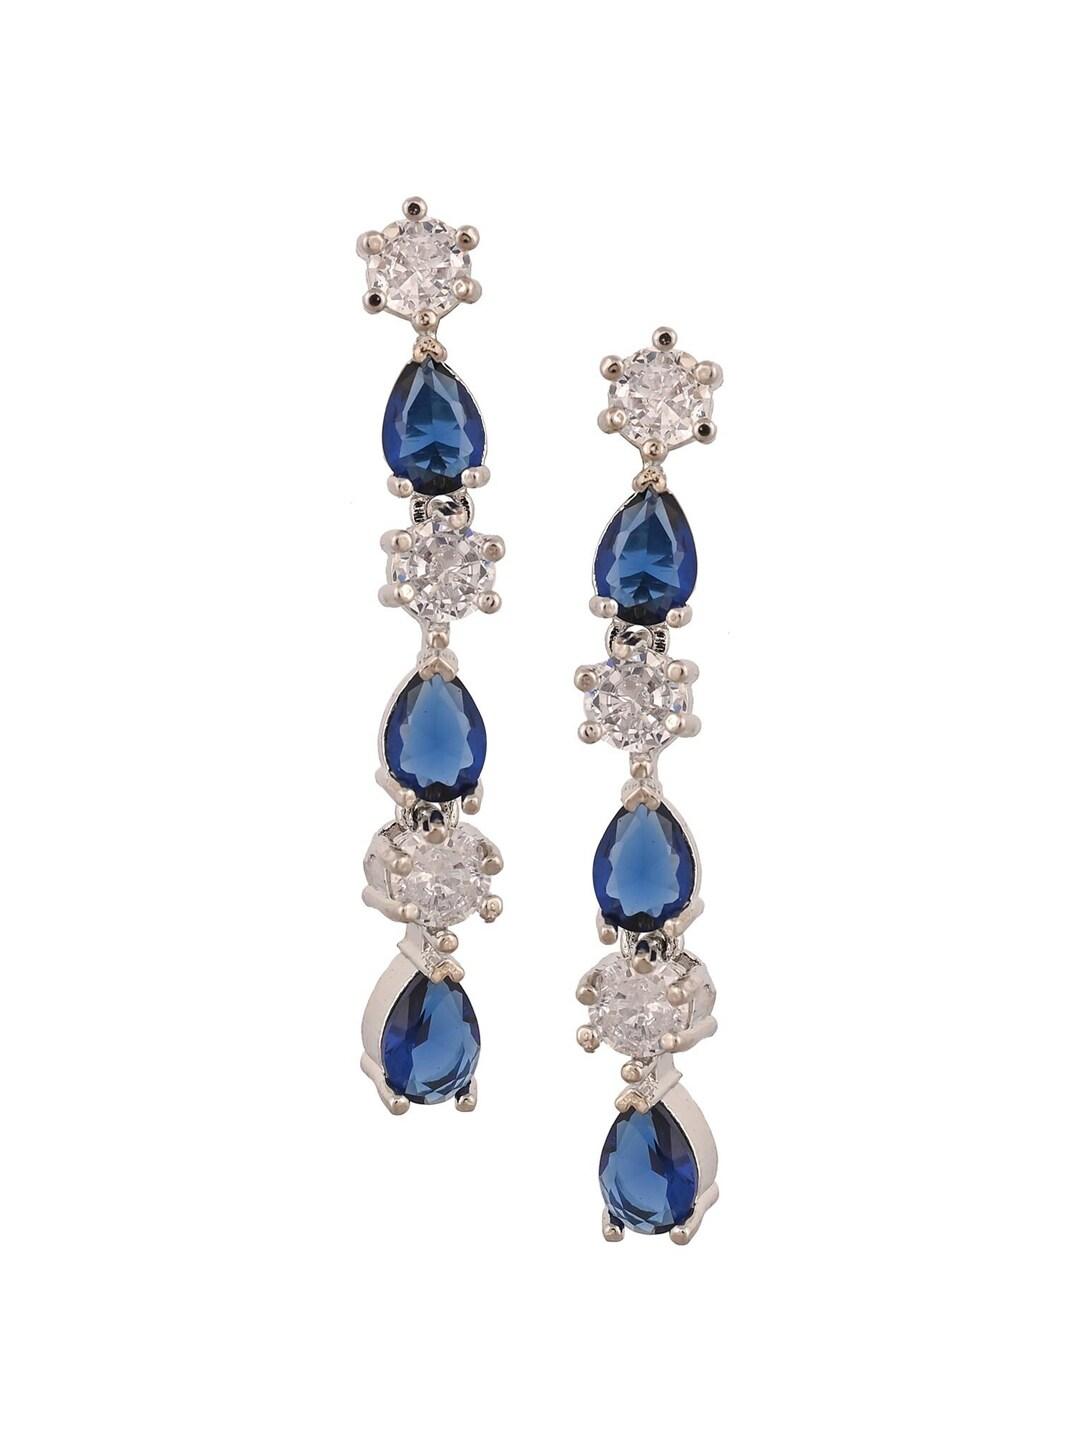 ratnavali jewels silver-plated teardrop shaped drop earrings